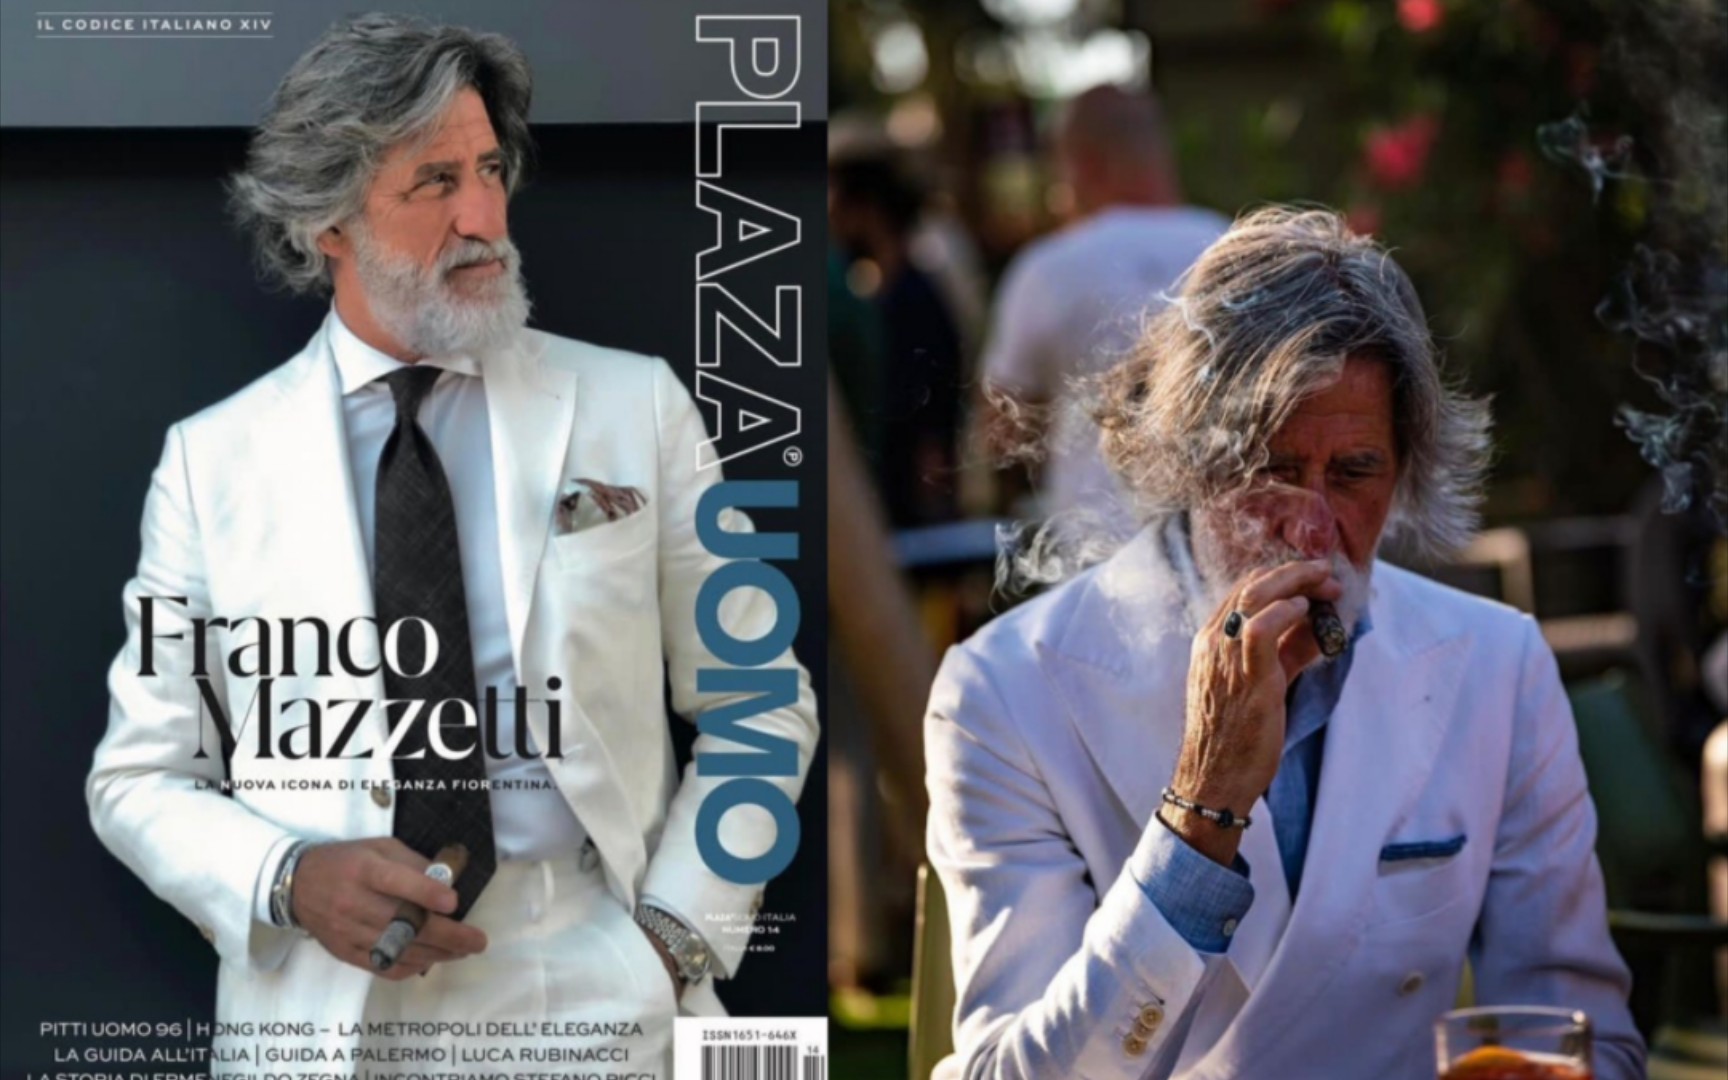 全世界最会穿西装的男人之？看完意大利著名网红穿搭博主Franco Mazzetti的你就明白了。现年69岁 ins:franz_1955。